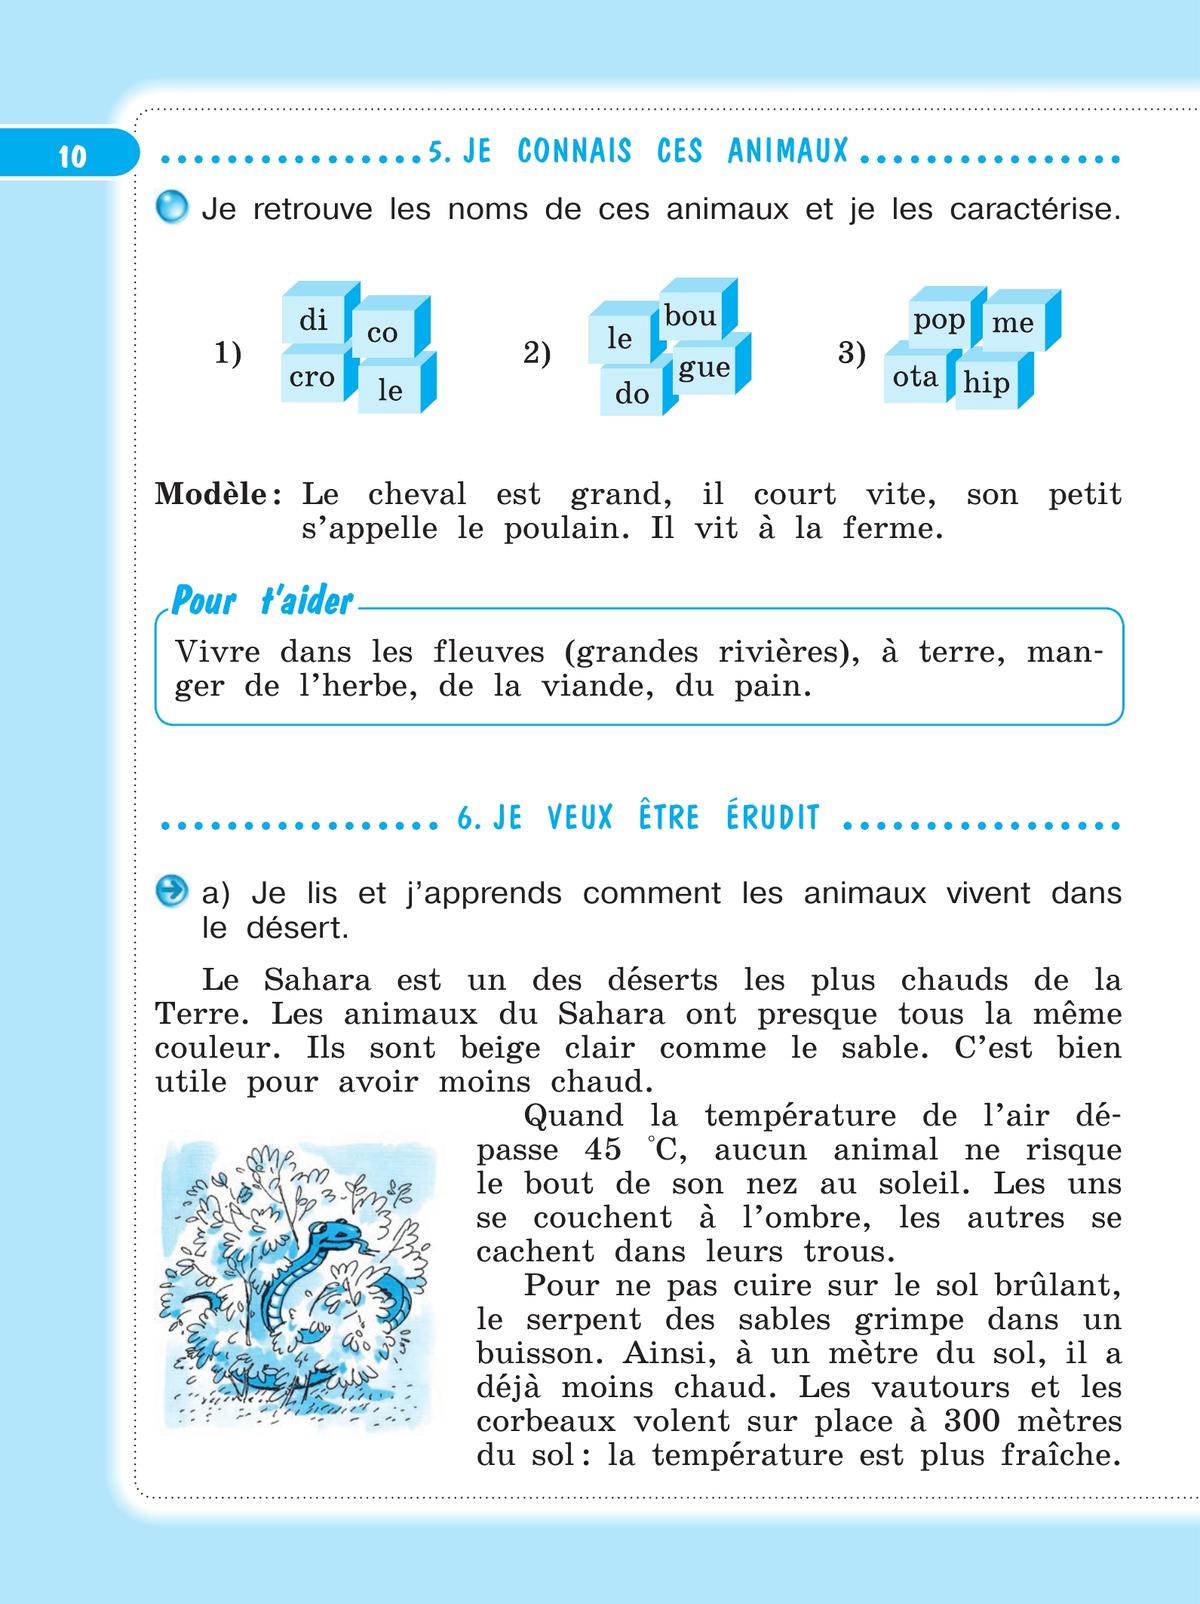 Французский язык. Рабочая тетрадь. 4 класс. 4